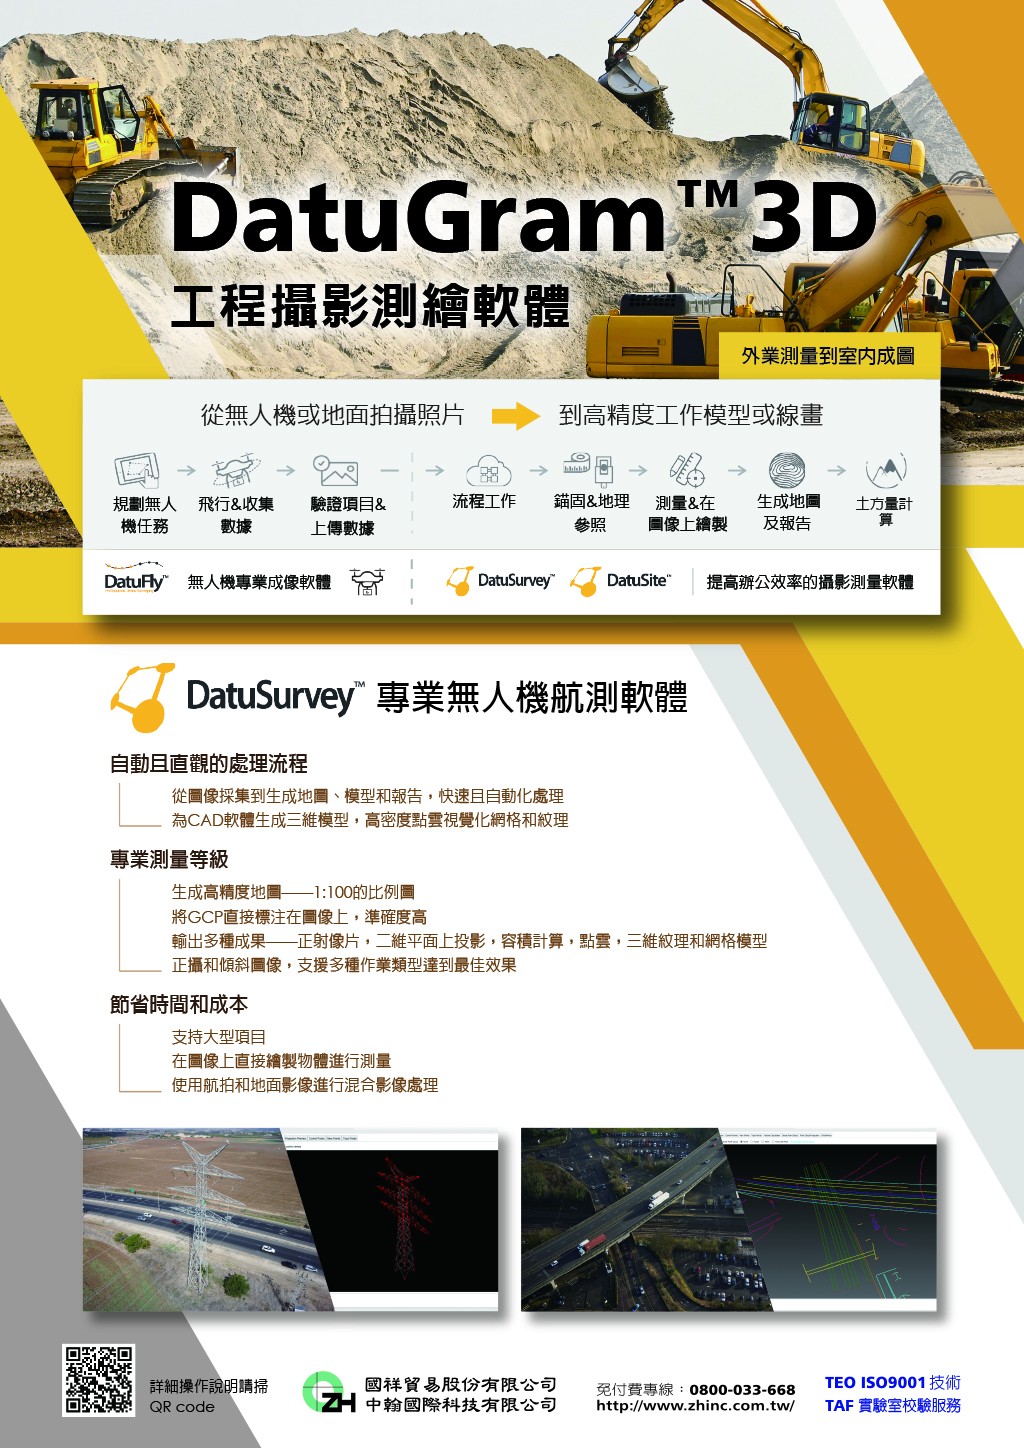 工程攝影測繪軟體 DatuGram™3D 空拍測量 - 【工程攝影測繪軟體】-- DatuGram™3D >>>無人機航測首選軟體